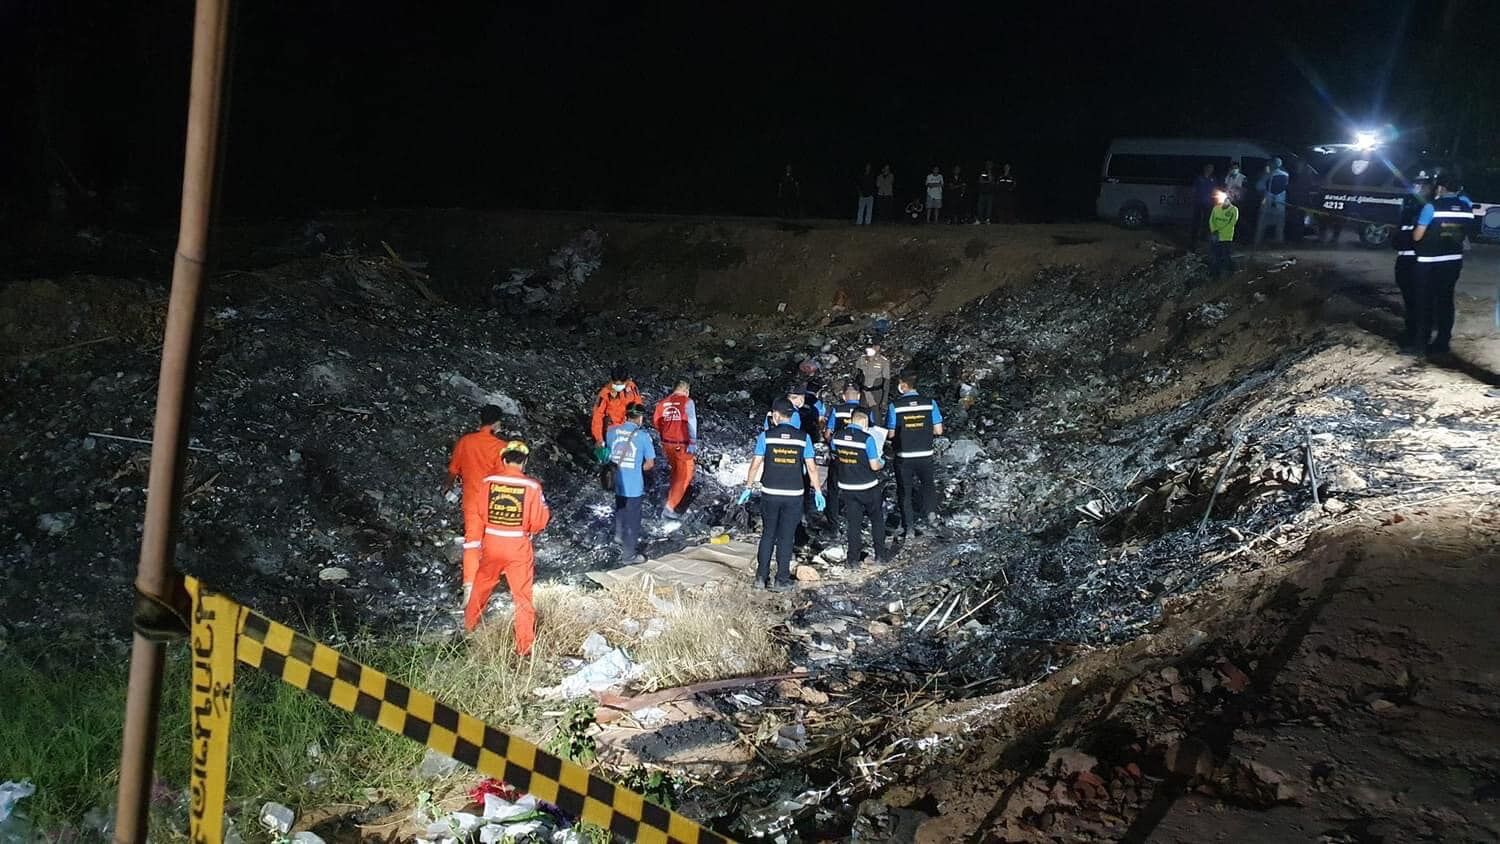 Burned skeleton in Khon Kaen landfill confirmed as female